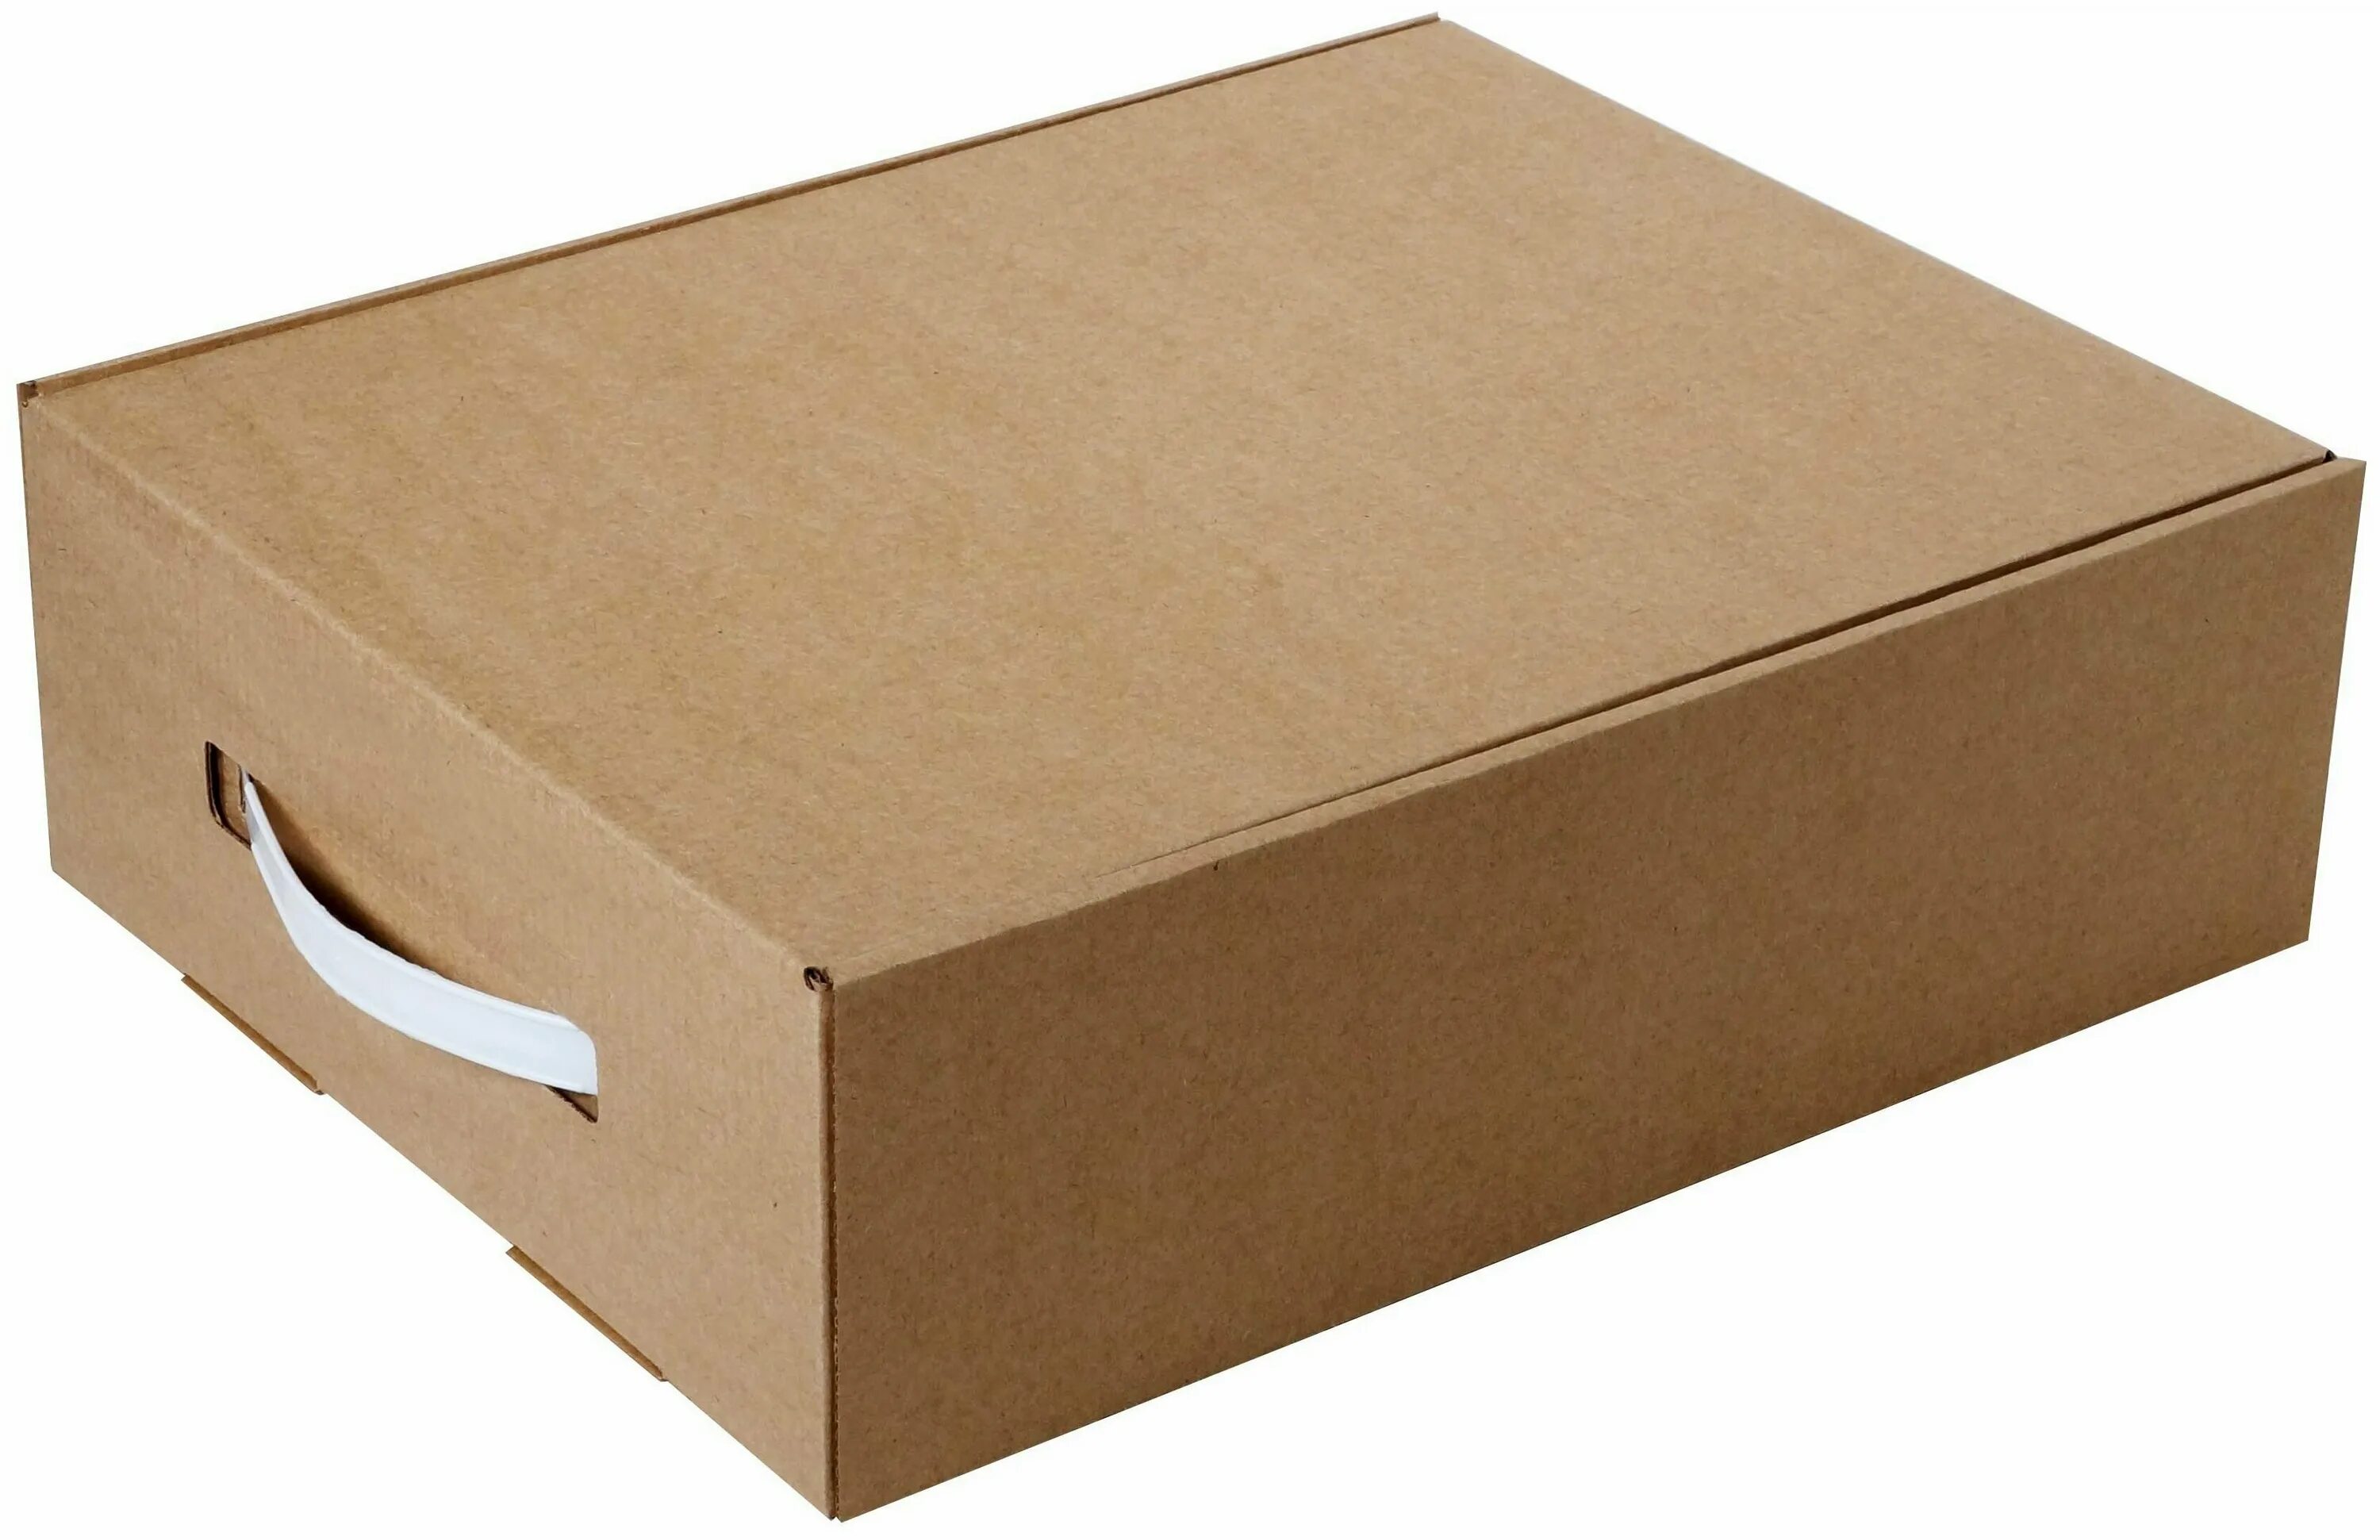 Коробка самосборная крафт 10х10х10см. Коробка самосборная крафт 23х23х8 см. Коробка самосборная т22 МГК белый. Коробка самосборная 130х90х70 крафт. Коробки купить во владимире